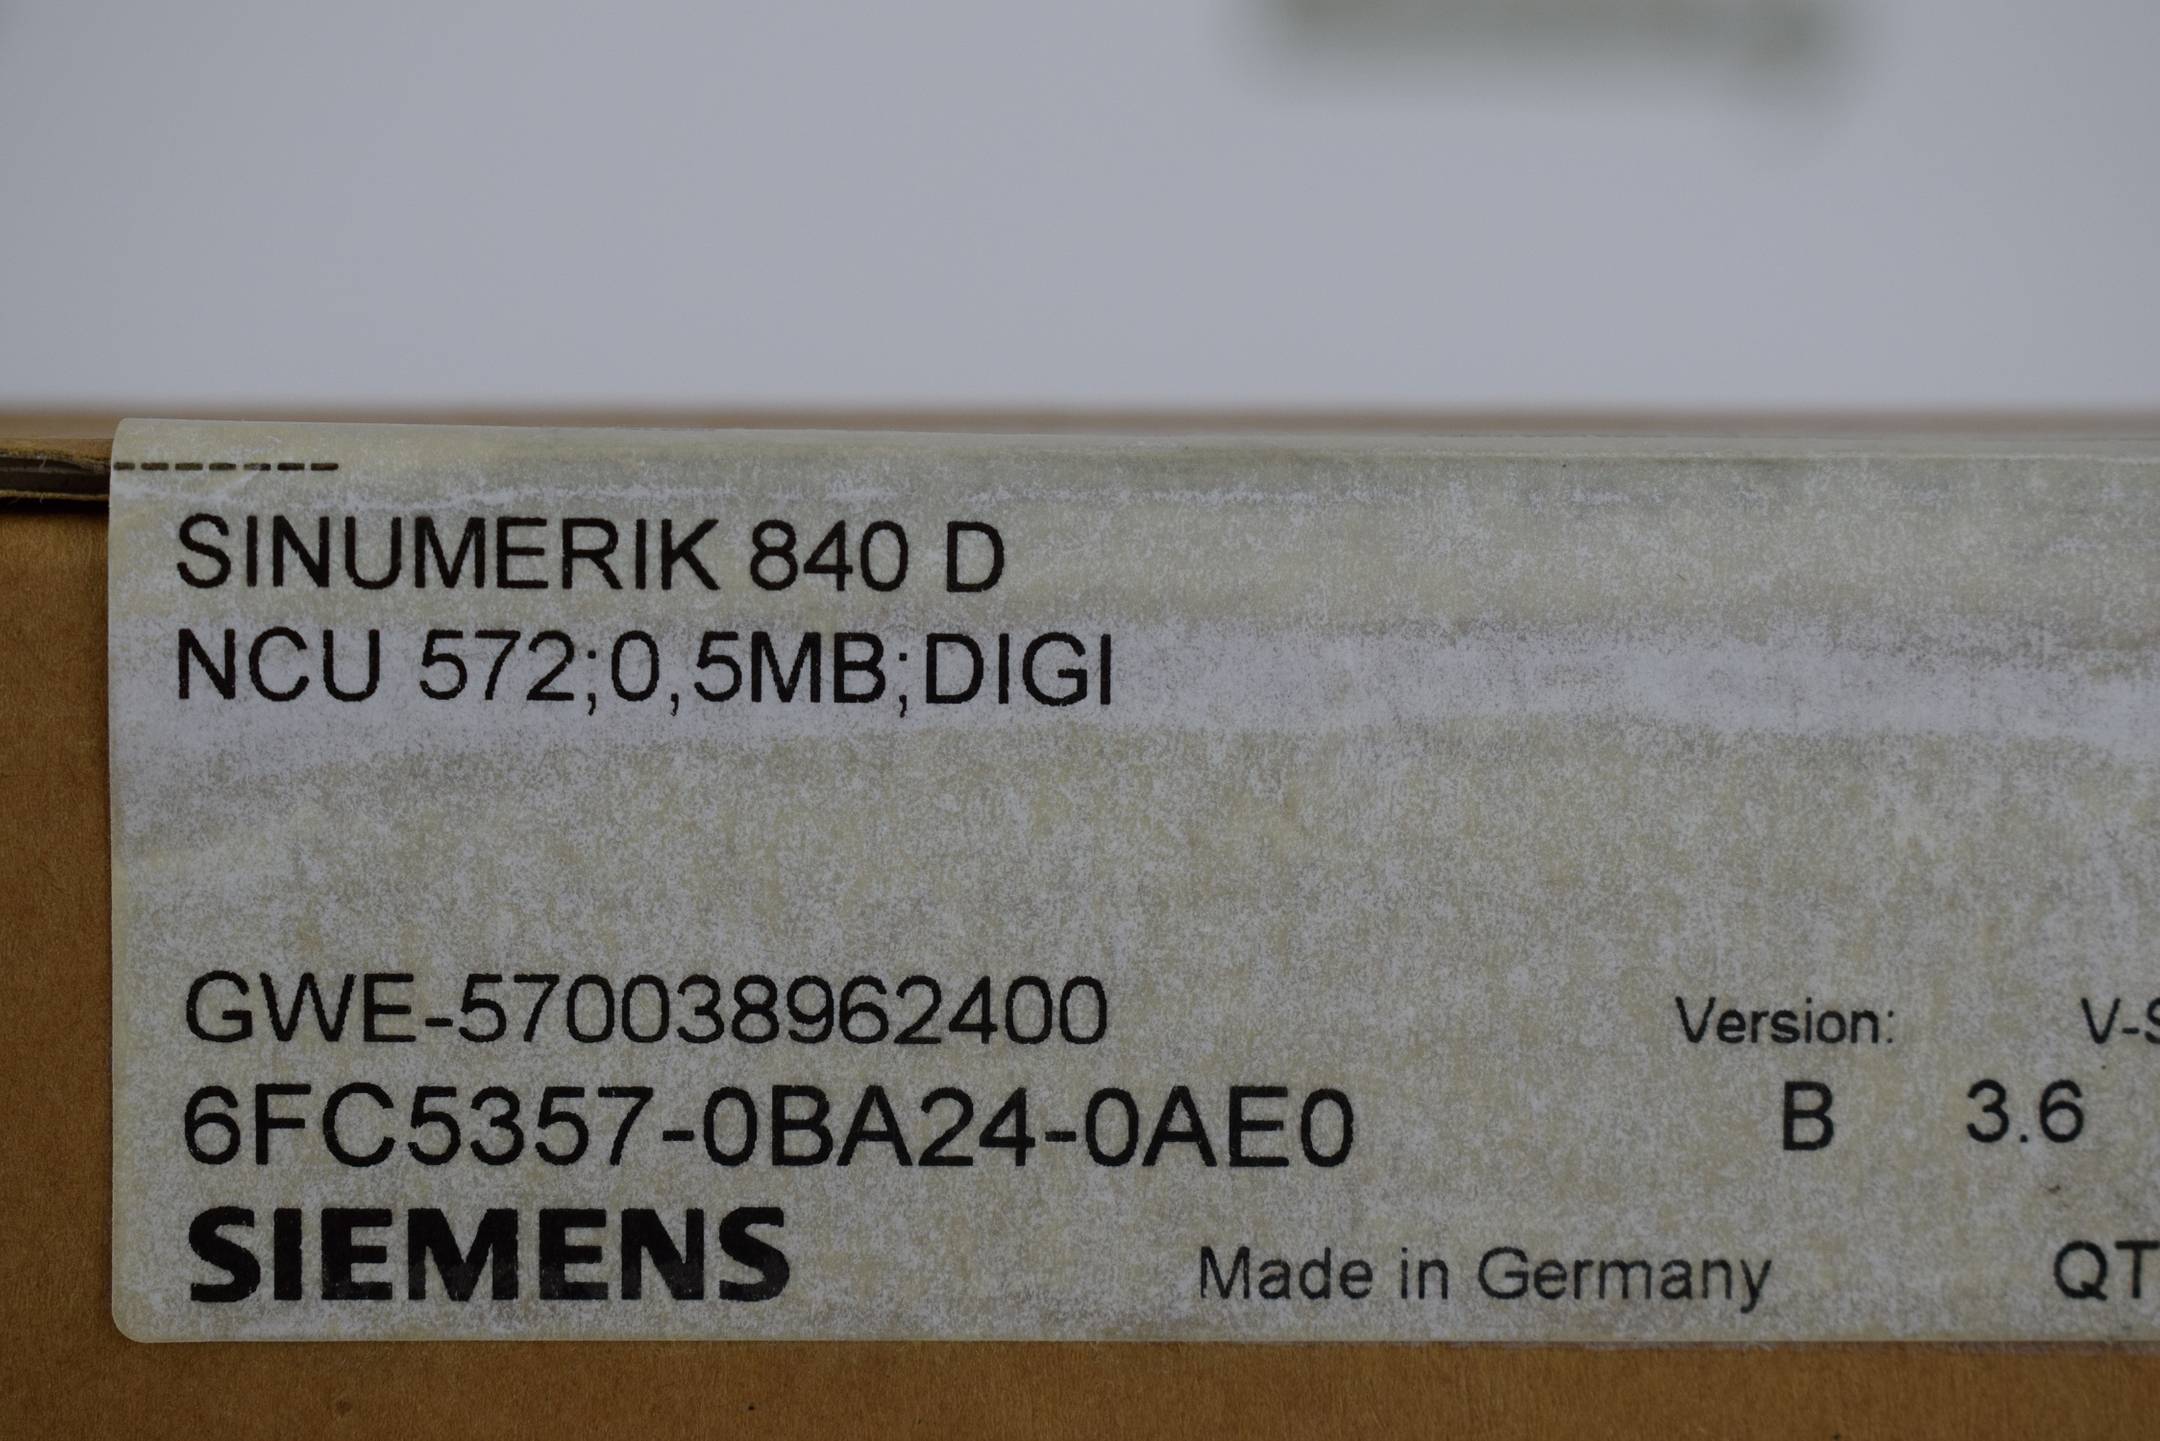 Siemens sinumerik 840 D 6FC5357-0BA24-0AE0 Ver. B 